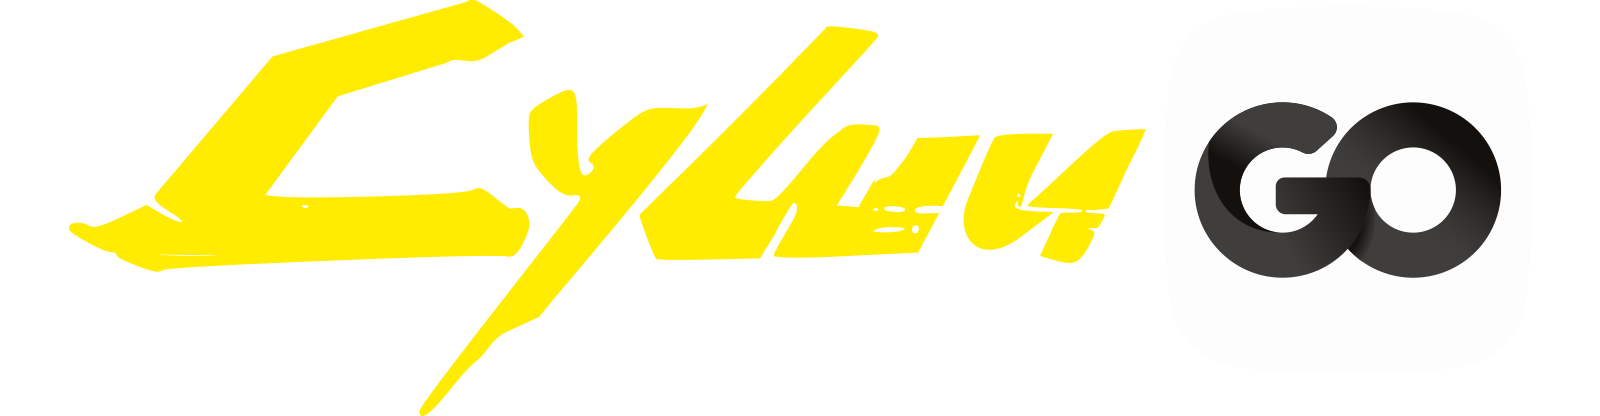 Логотип Суши GO